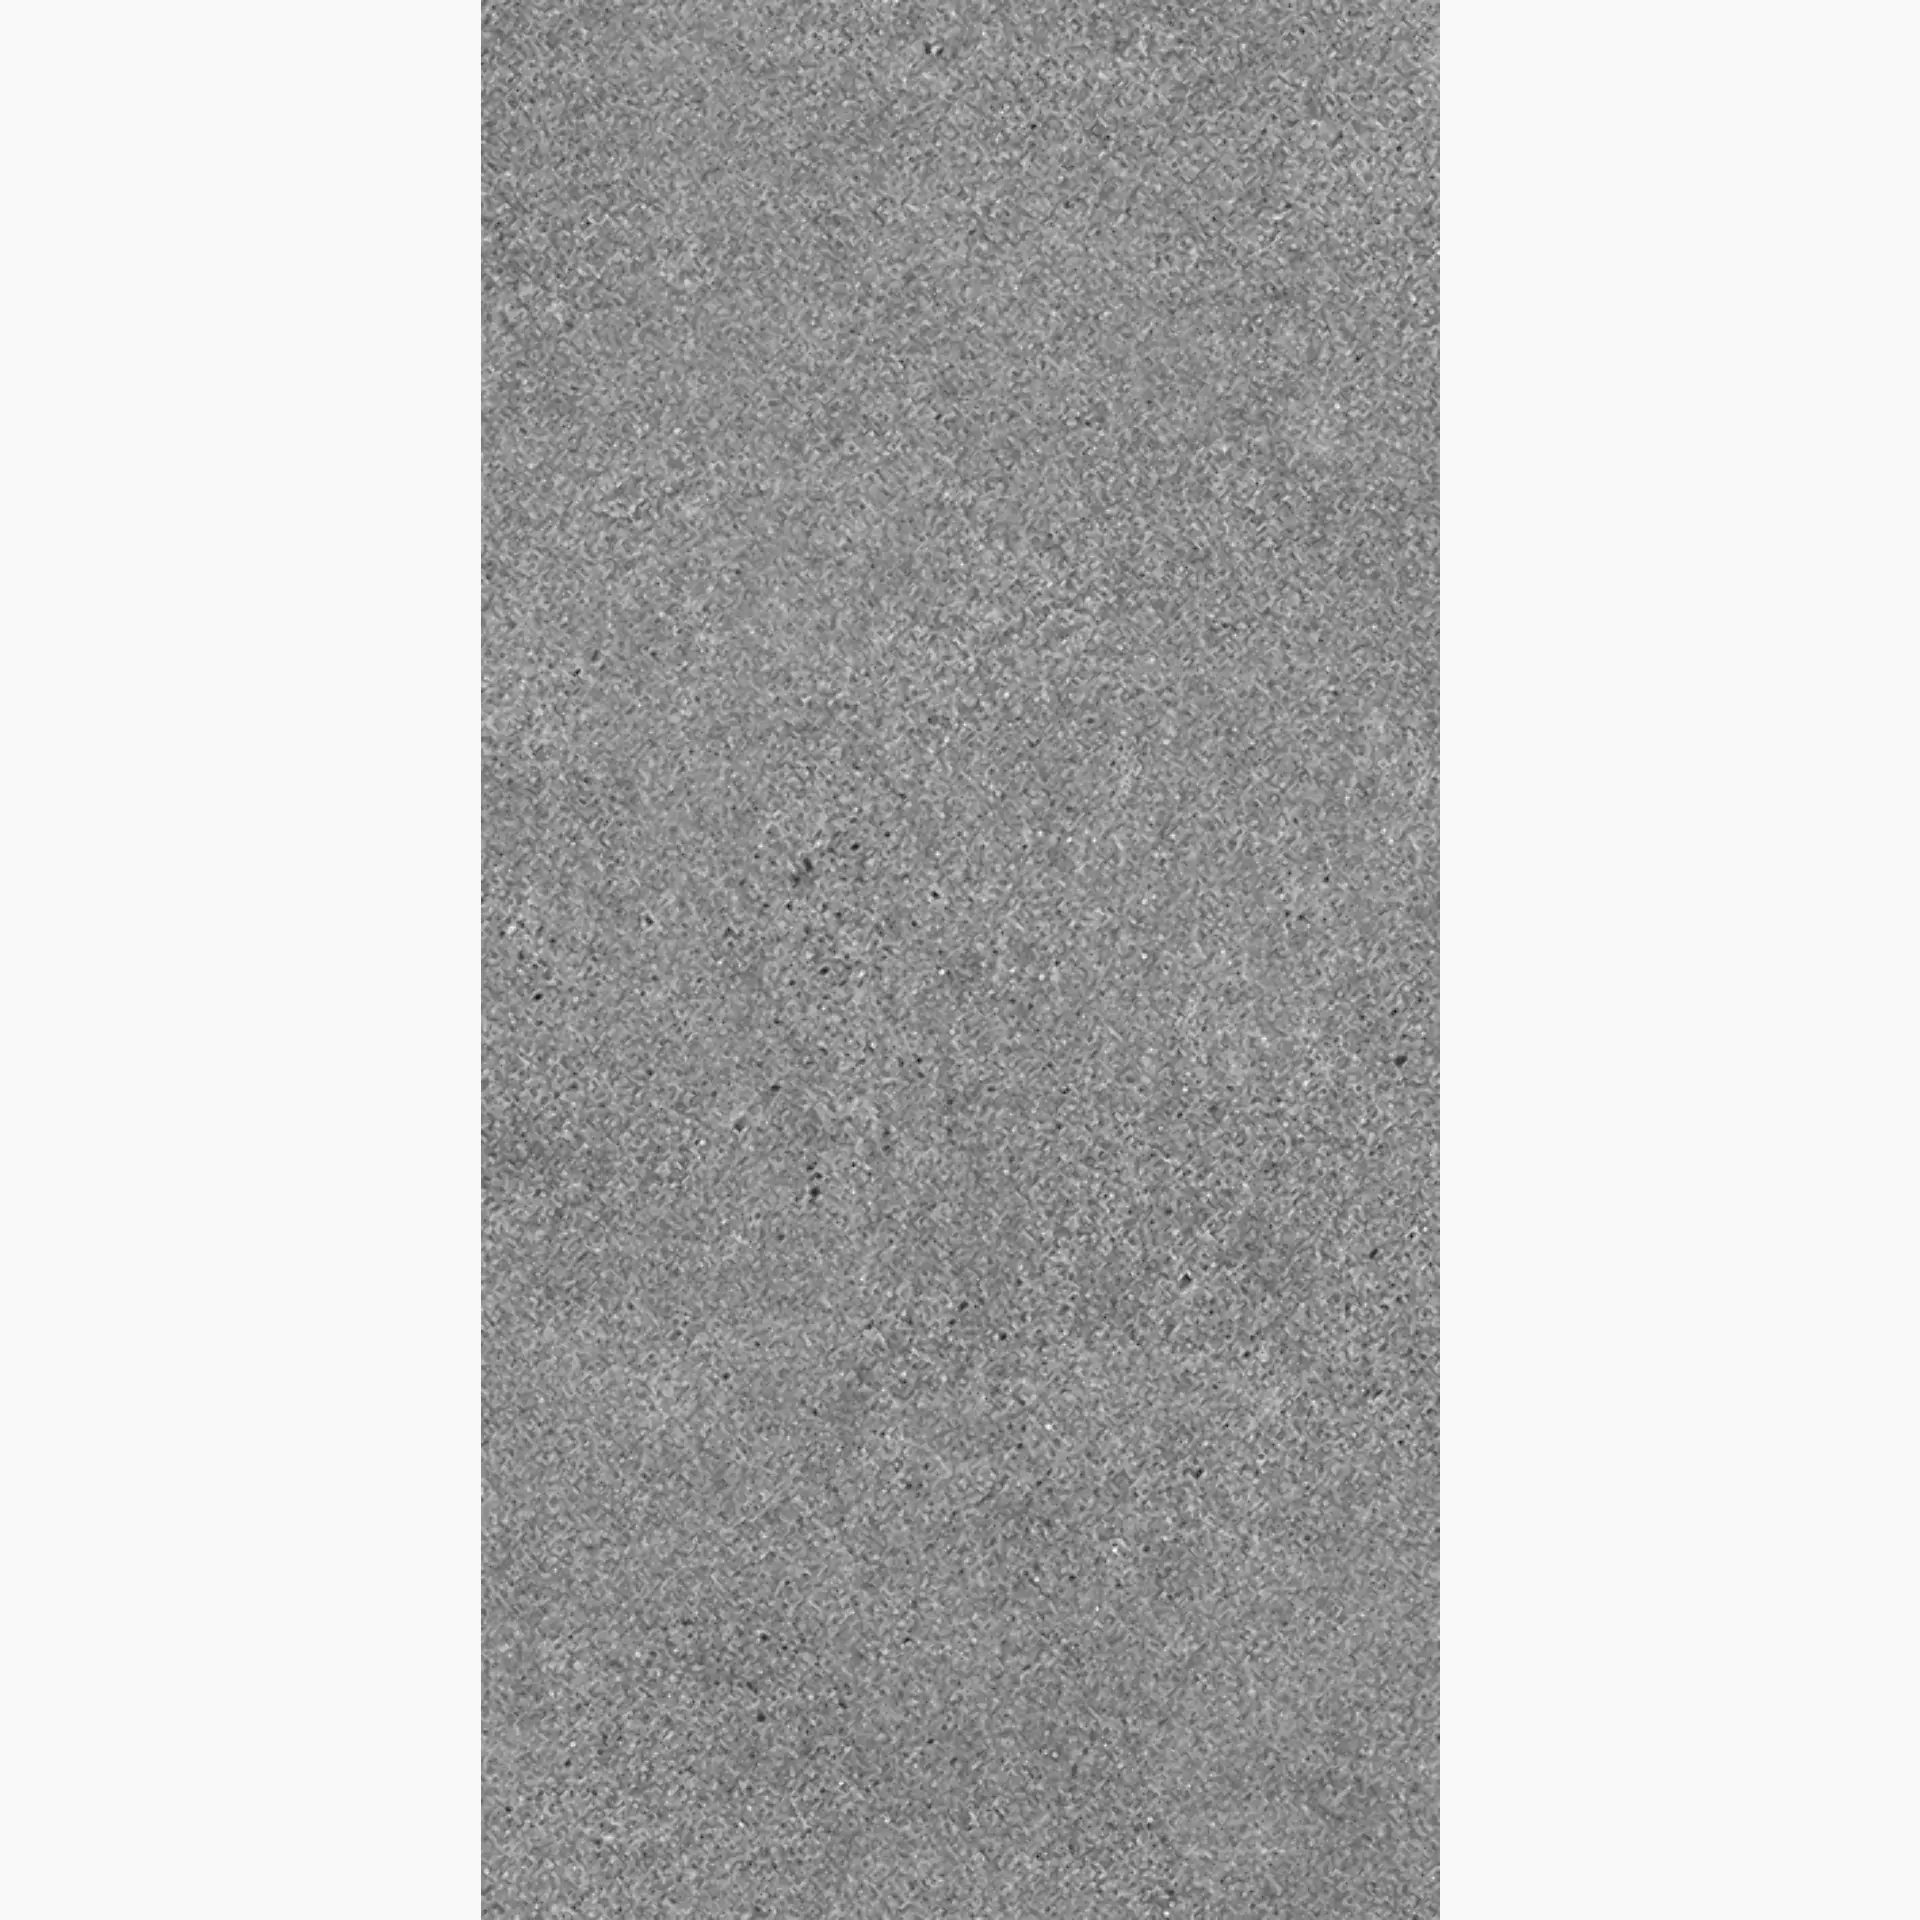 Wandfliese,Bodenfliese Villeroy & Boch Solid Tones Pure Stone Matt Pure Stone 2685-PS61 matt 30x60cm rektifiziert 10mm